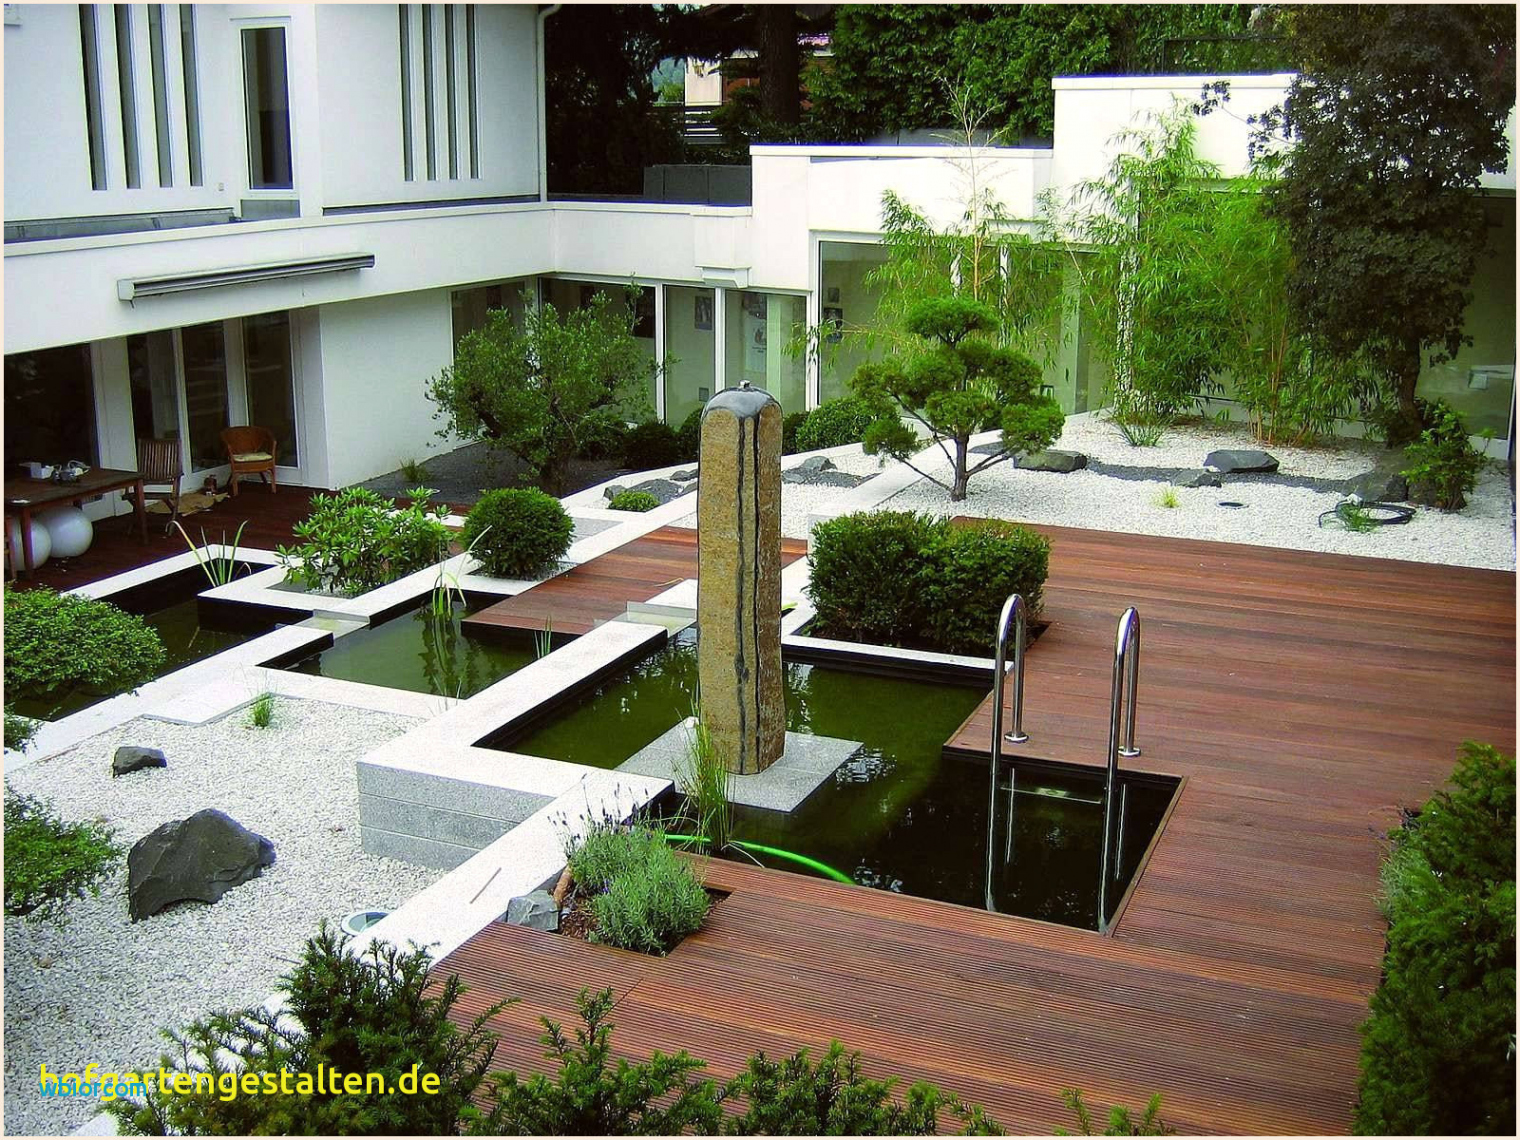 Beton Ideen Für Den Garten Elegant Ideen Für Grillplatz Im Garten — Temobardz Home Blog